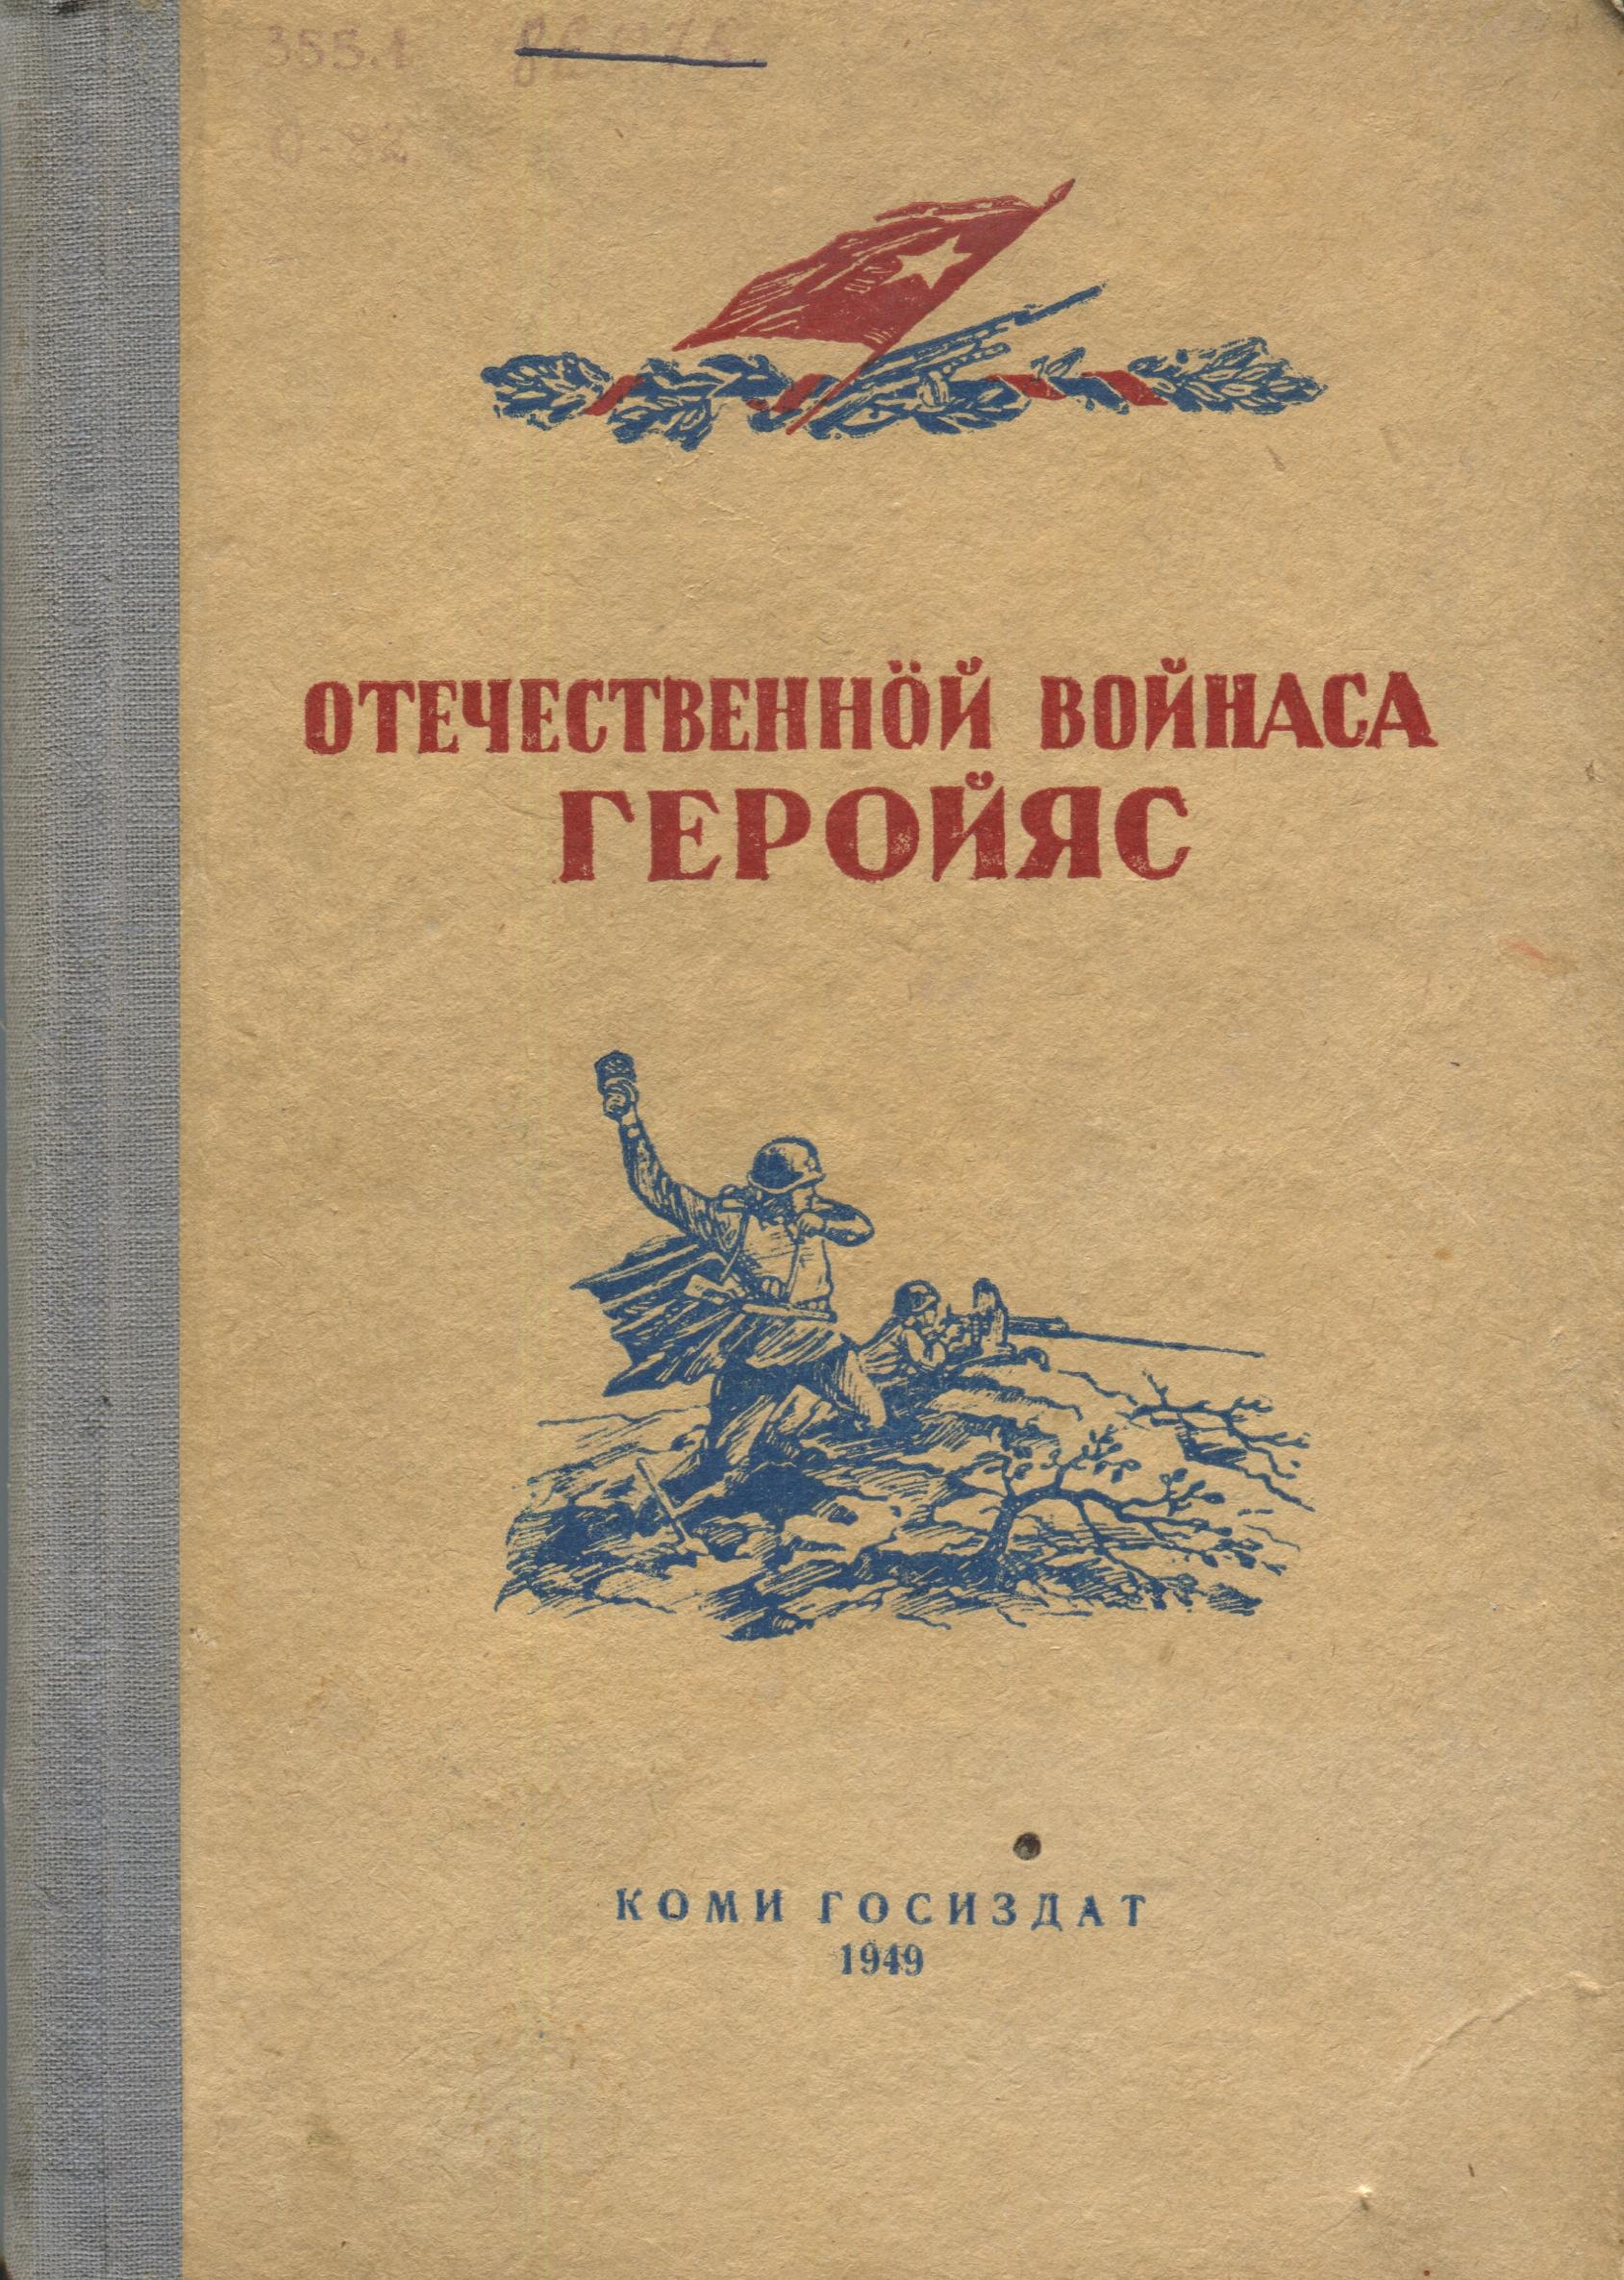 Файл:Ovg cover 1949.jpg